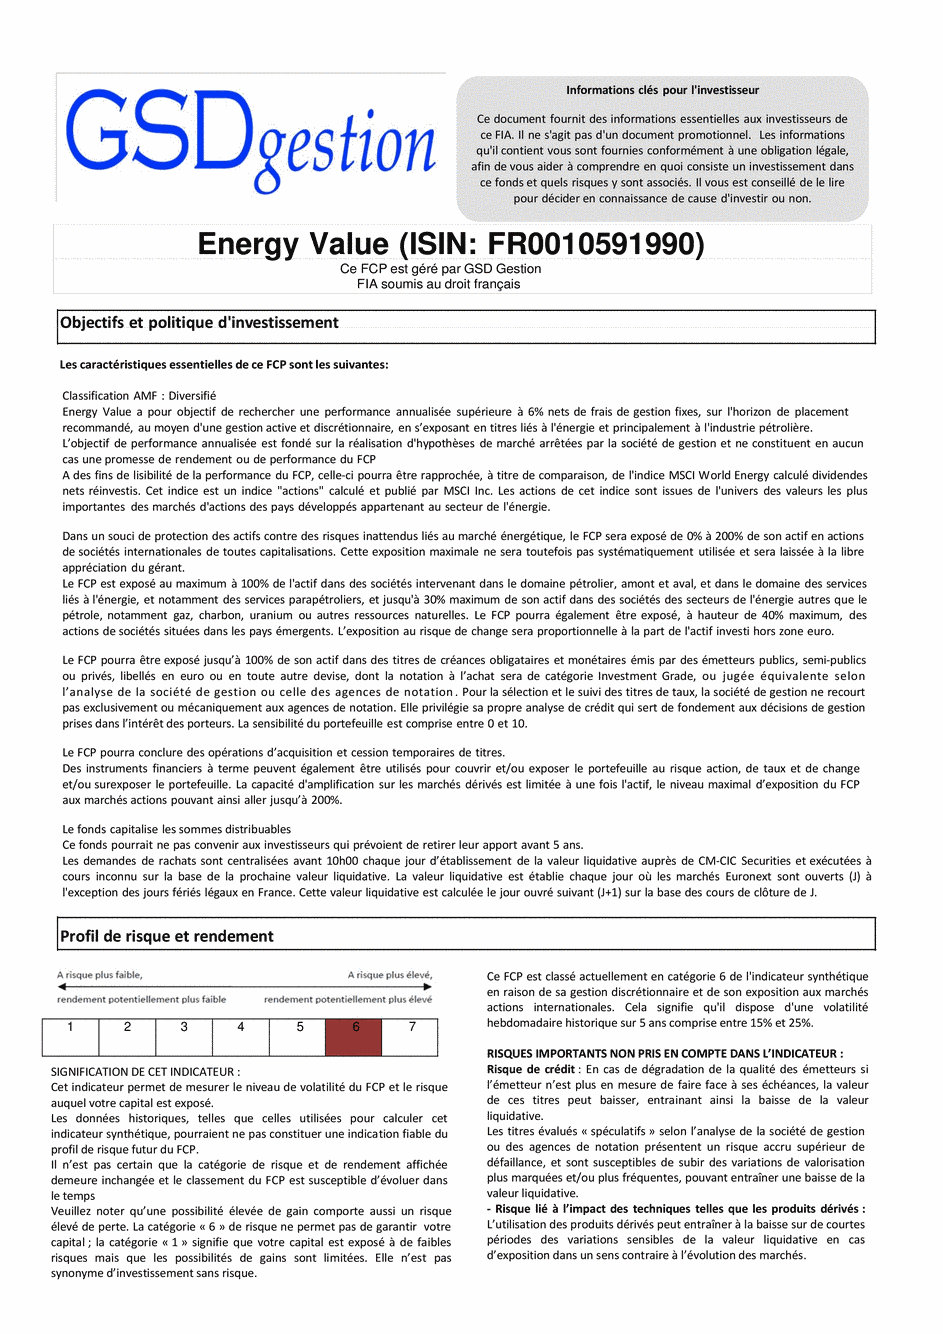 DICI-Prospectus Complet Energy Value - 29/04/2015 - Français